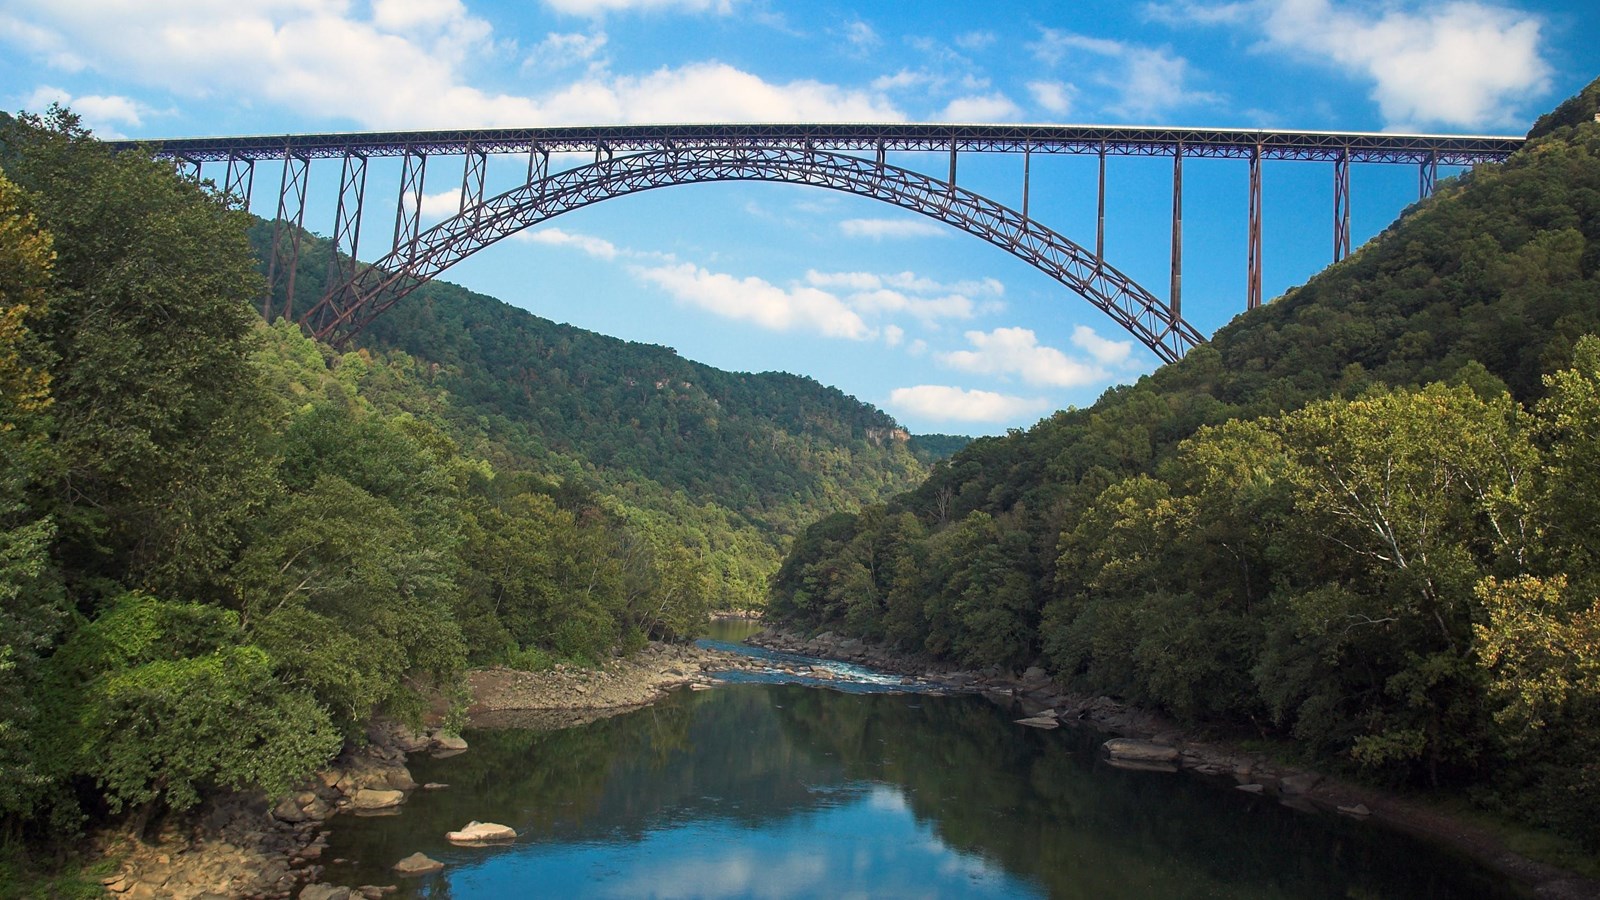 large bridge spans across river gorge